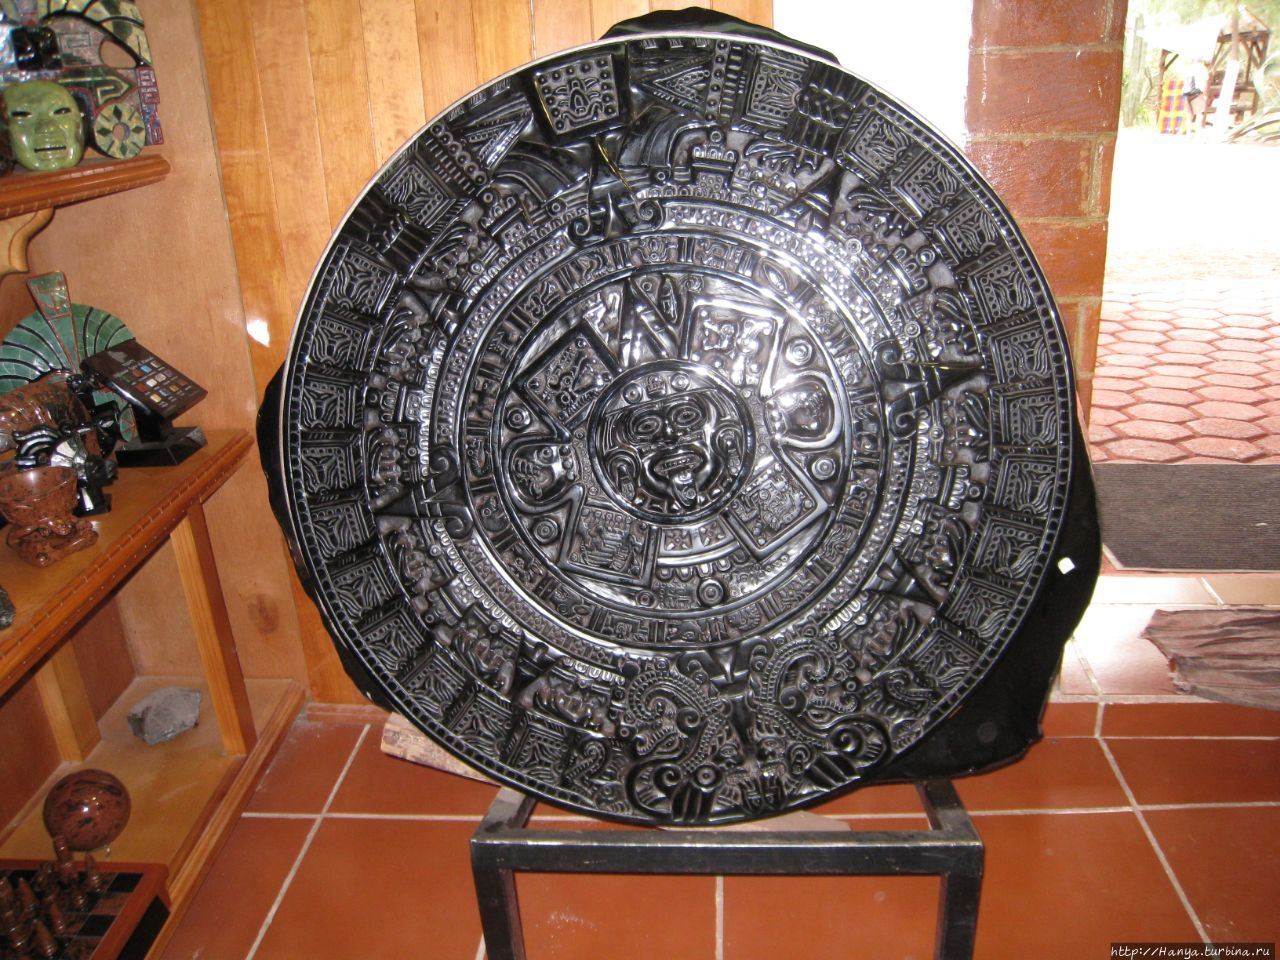 Каменотесная мастерская с сувенирным магазином Теотиуакан пре-испанский город тольтеков, Мексика